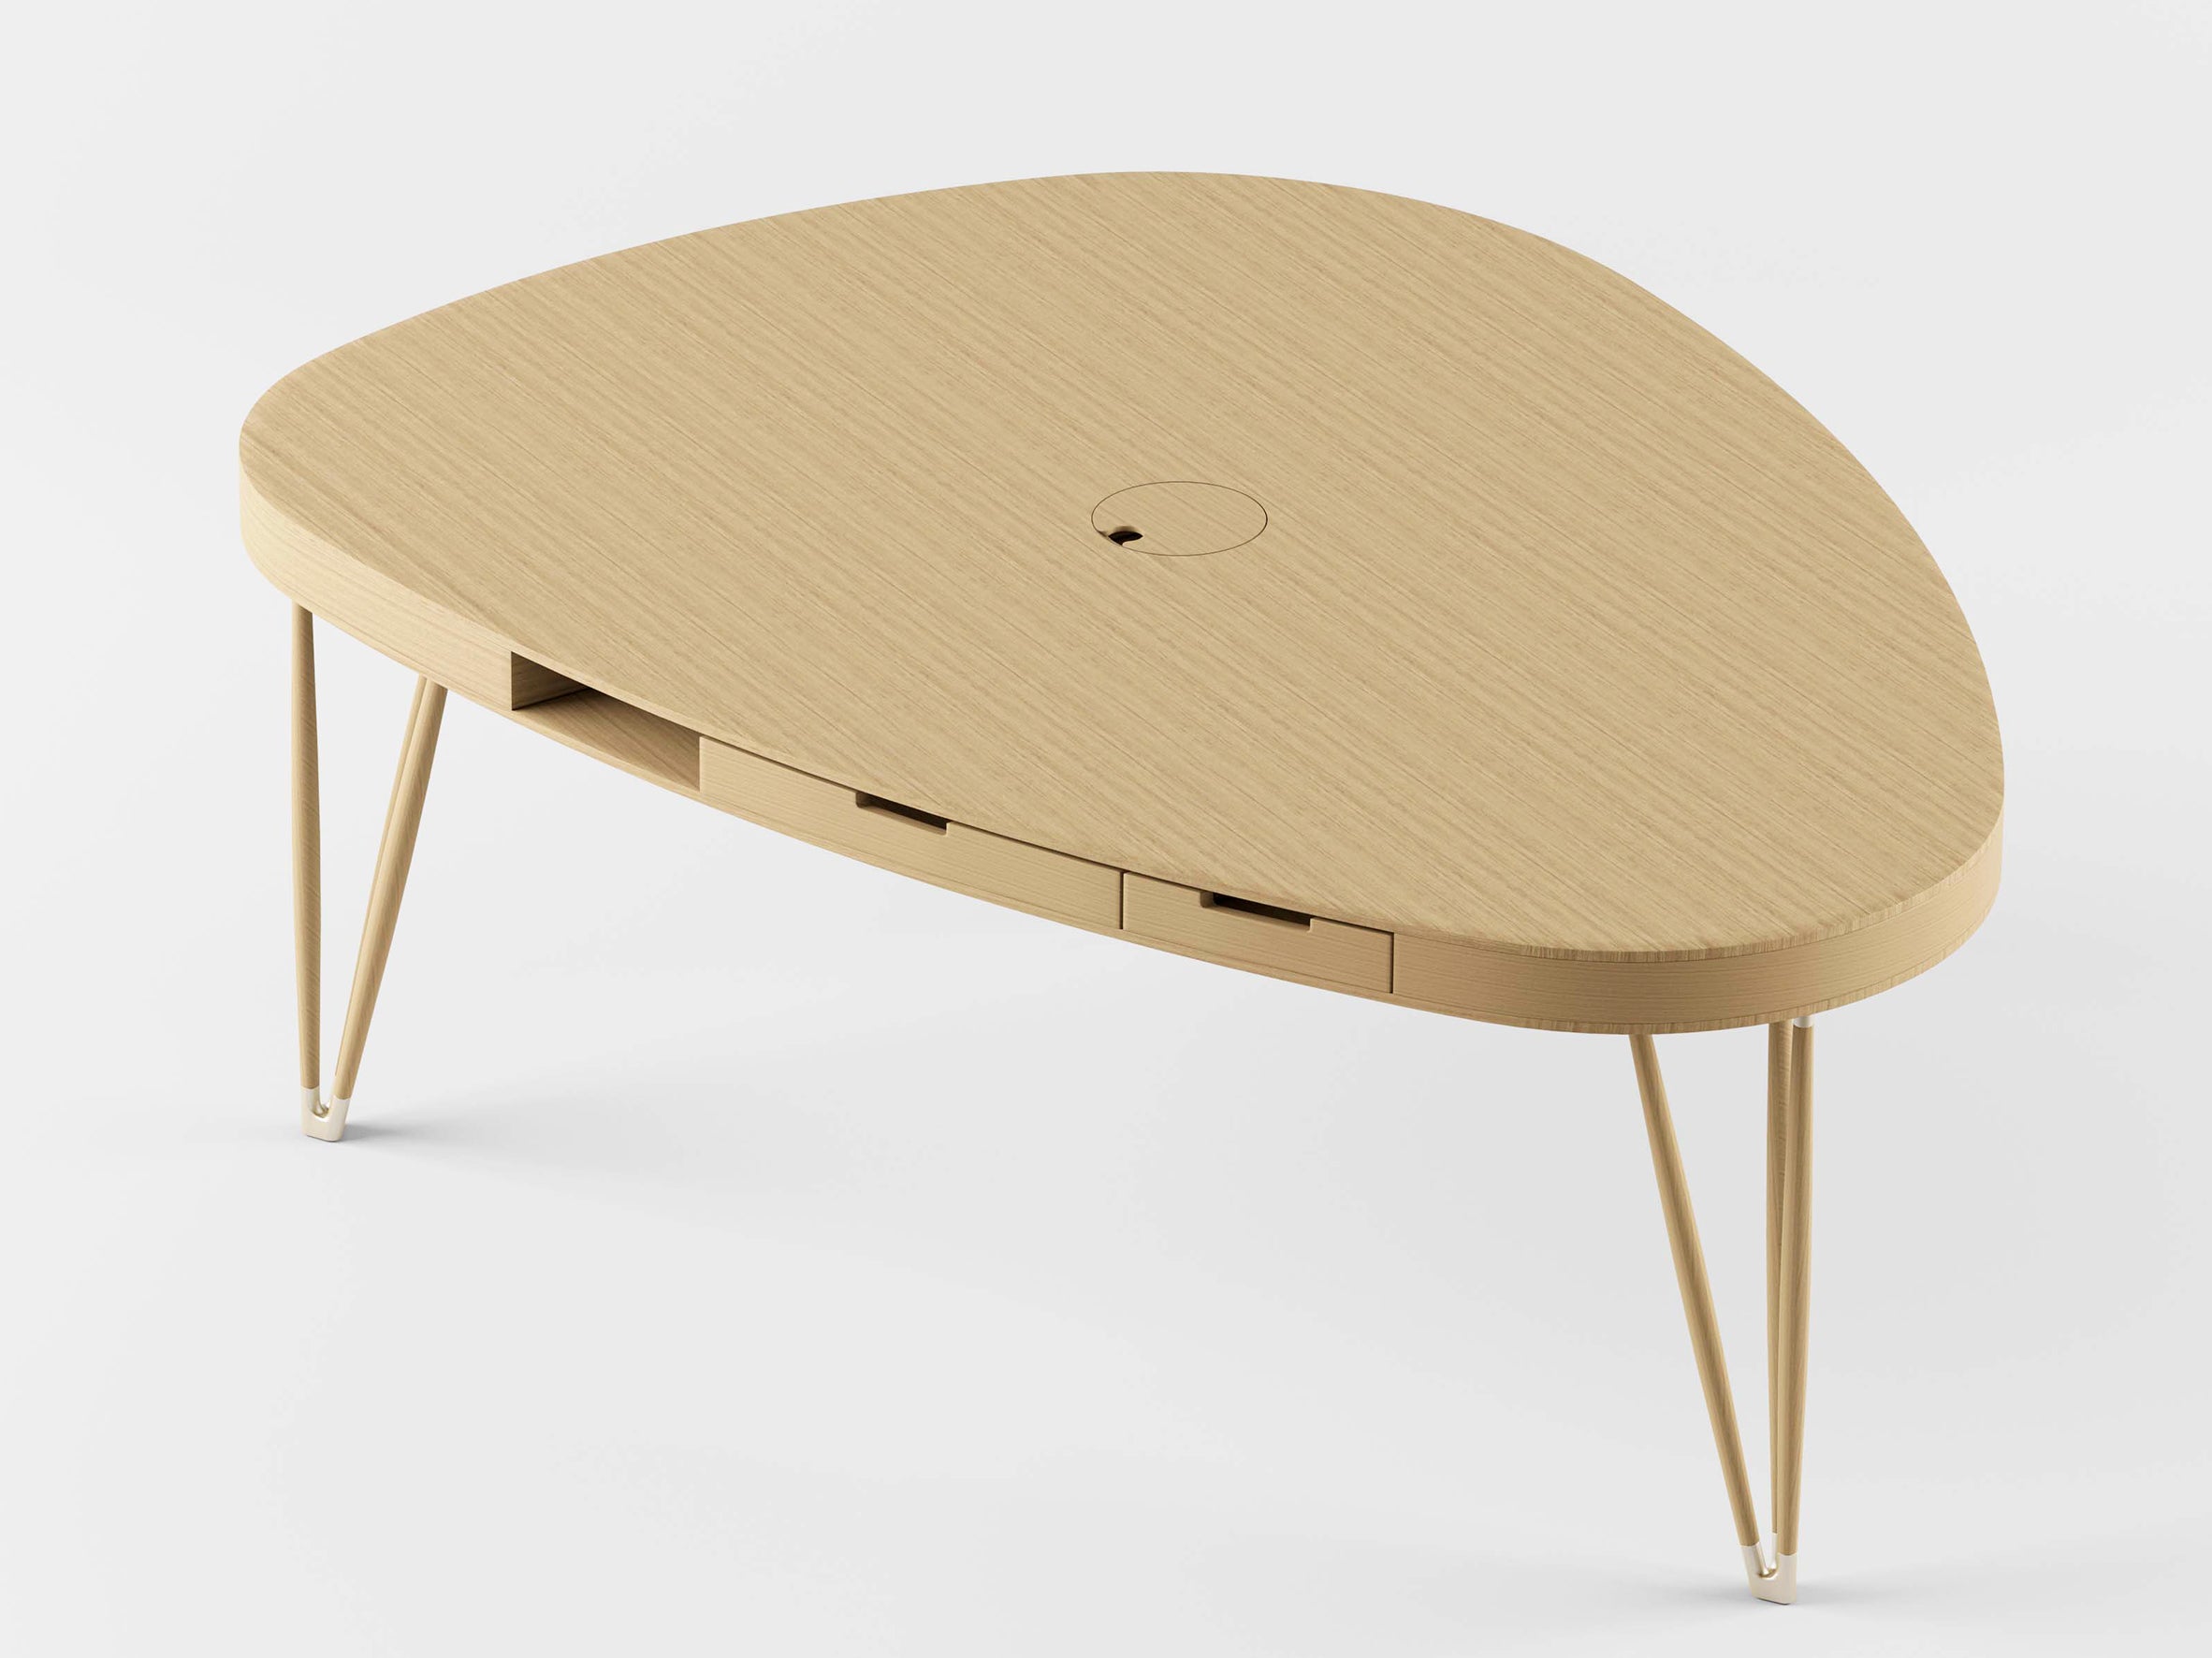 Dans sa recherche permanente d'innovation, Alias présente plettro, une réinterprétation de la table traditionnelle à tiroirs, conçue par Paolo Rizzatto. D'un point de vue typologique, cette solution crée un espace de rangement dans le plateau de la